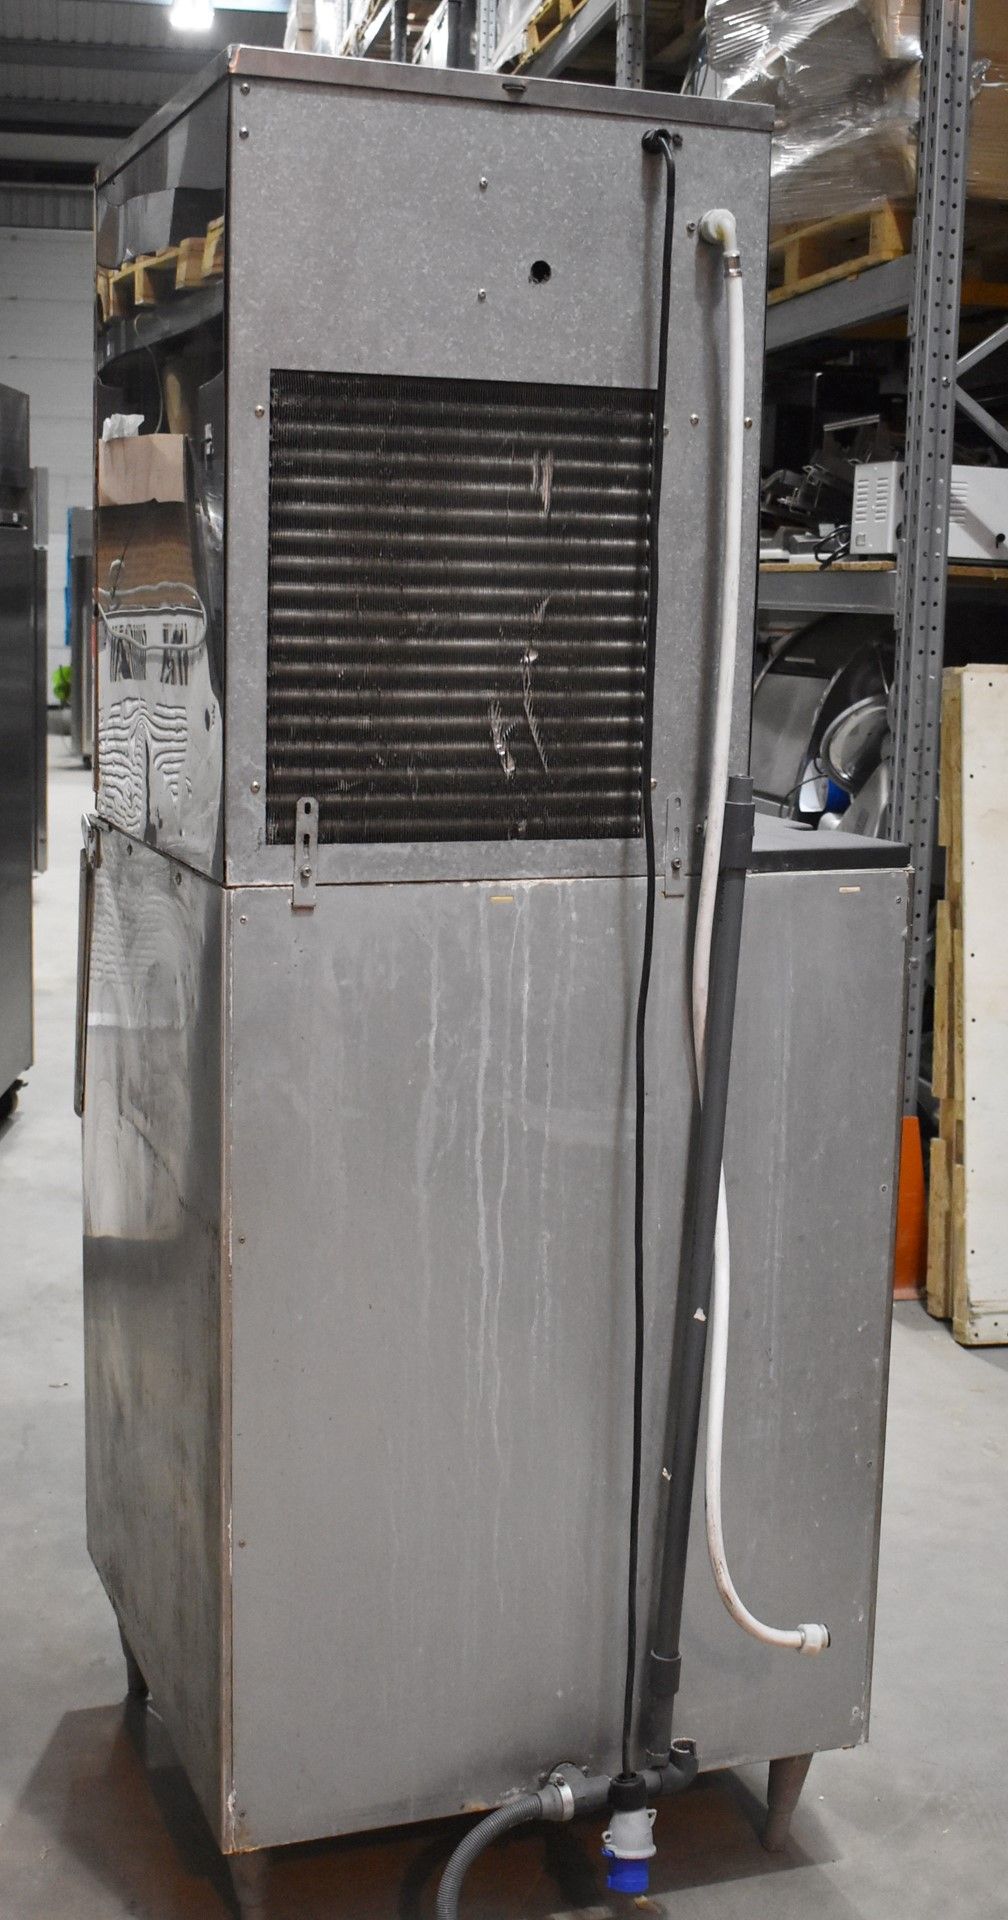 1 x Hoshizaki FM-480AFE Ice Machine - Produces Upto 480kg of Ice Flakes Per Days - Includes Large - Image 9 of 12